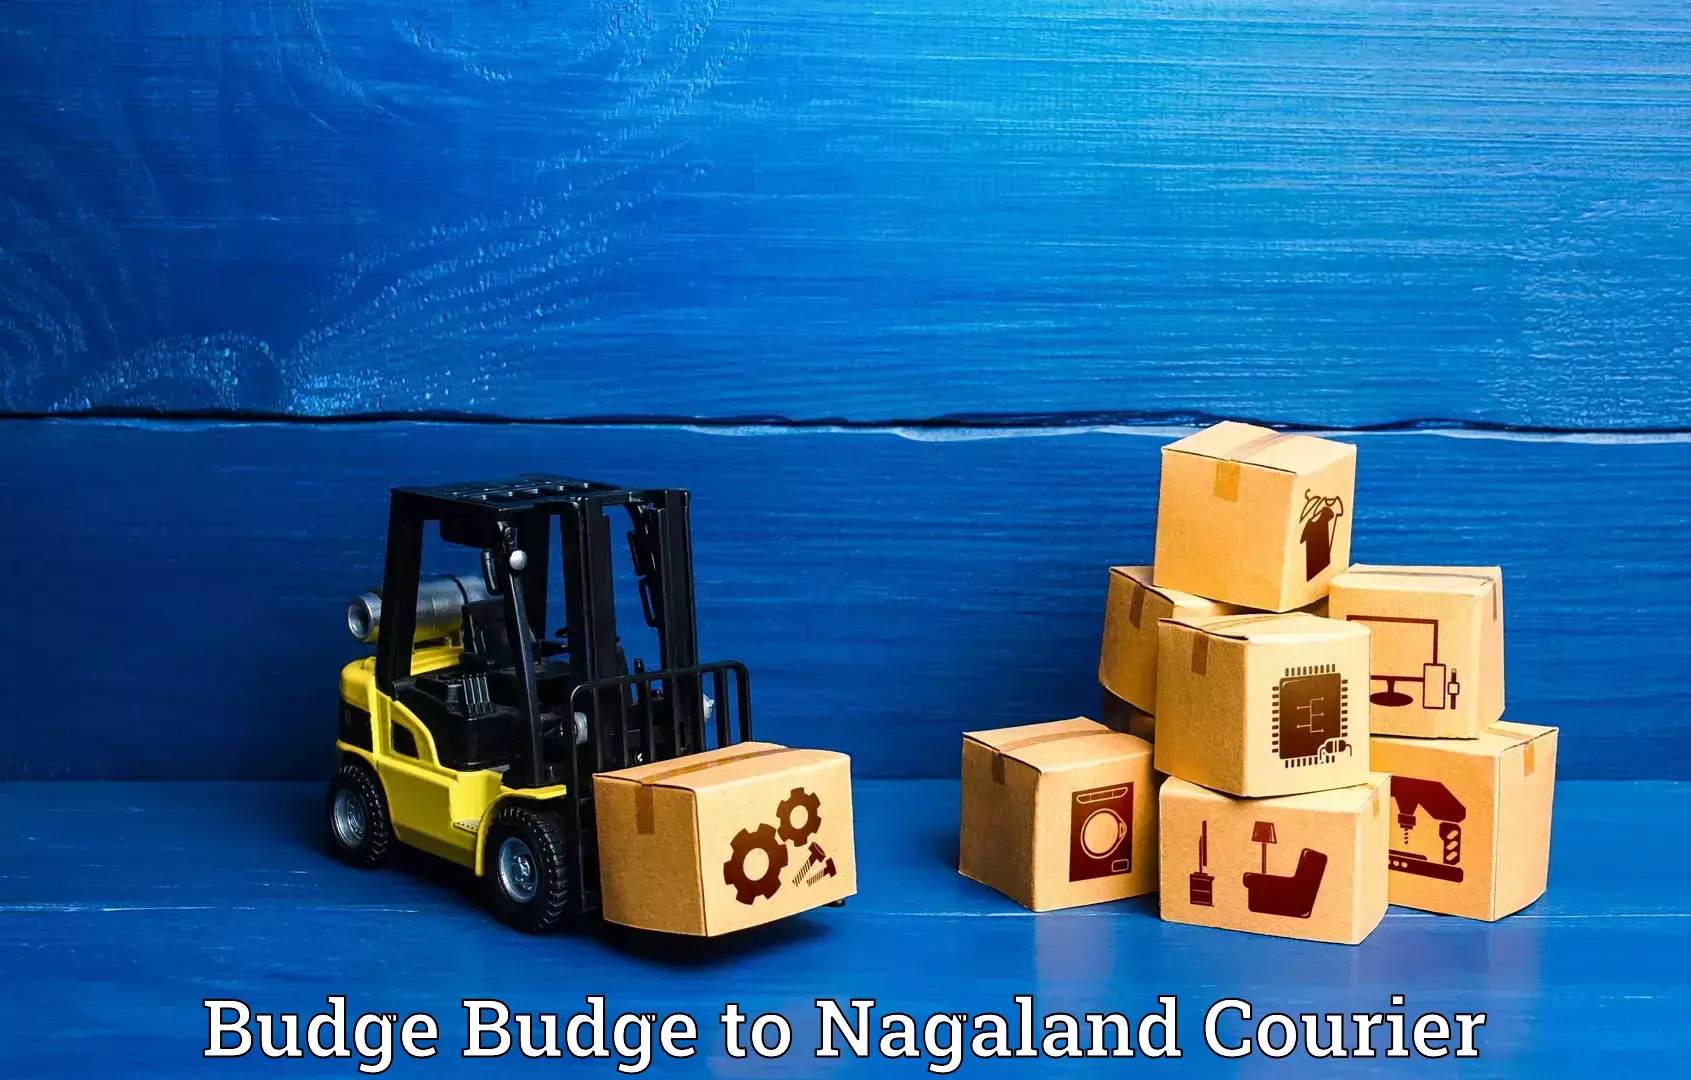 Luggage transit service Budge Budge to NIT Nagaland